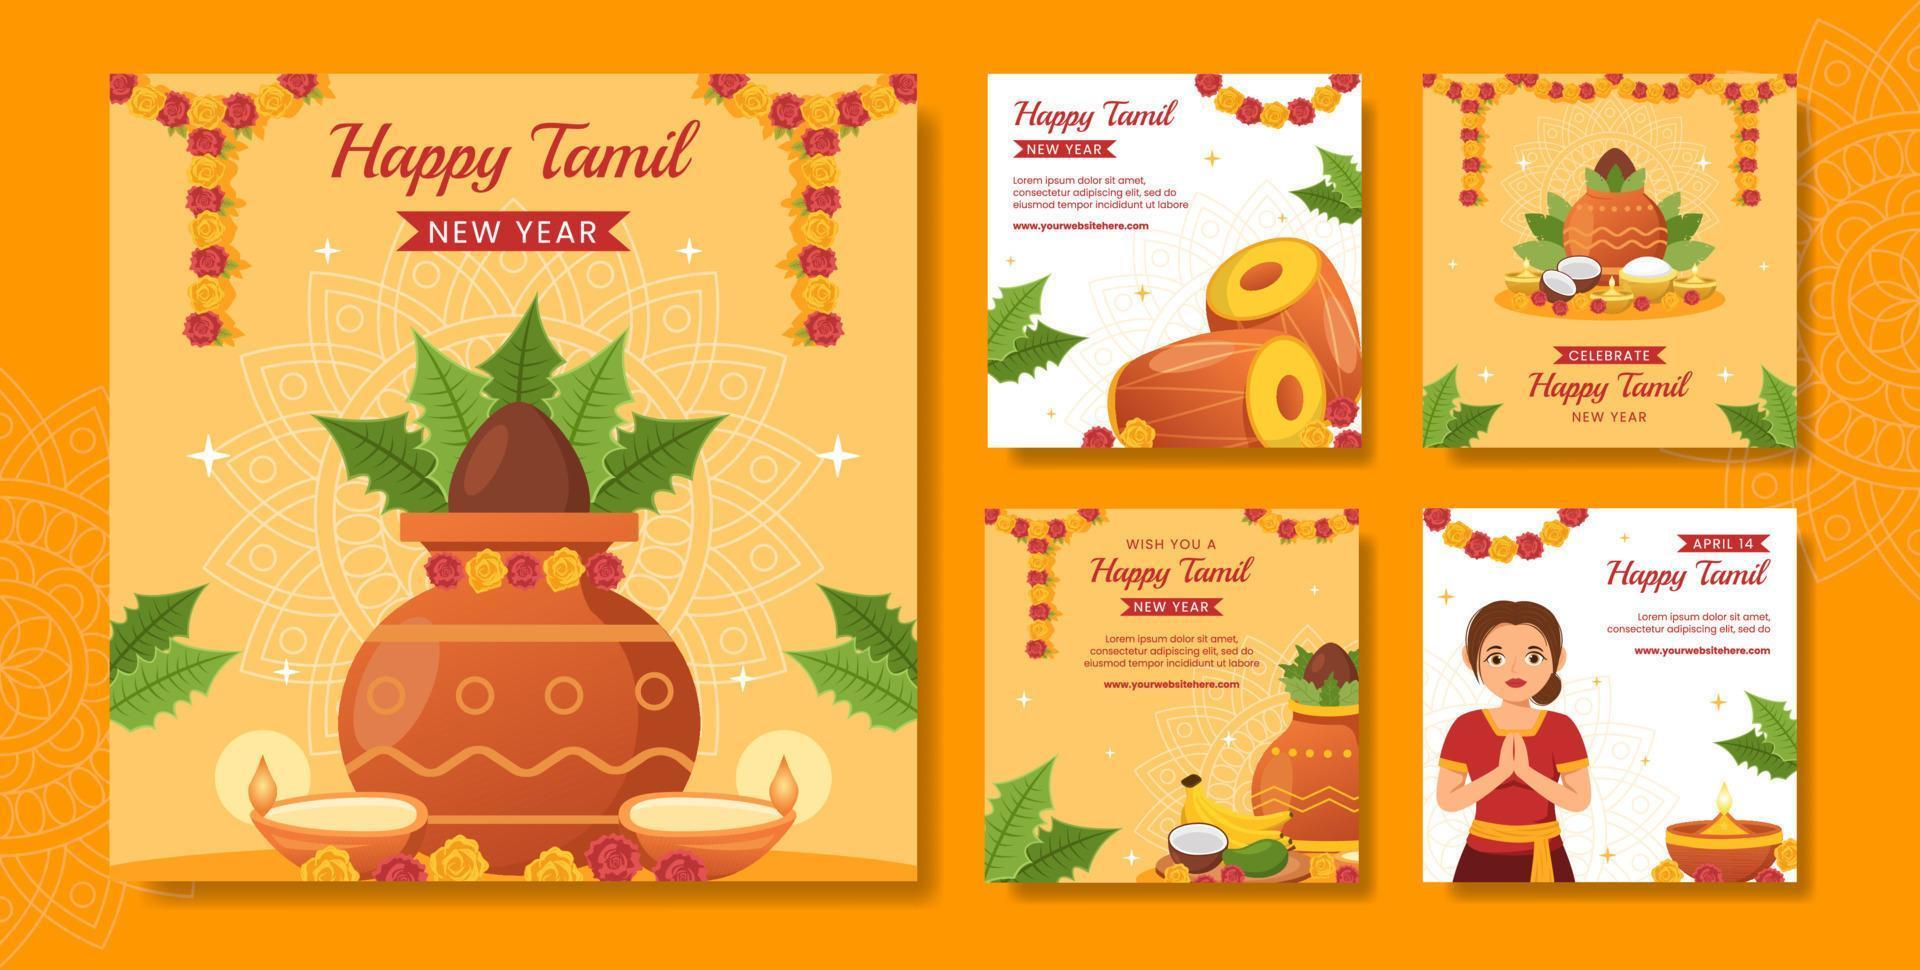 contento tamil nuevo año social medios de comunicación enviar plano dibujos animados mano dibujado plantillas antecedentes ilustración vector